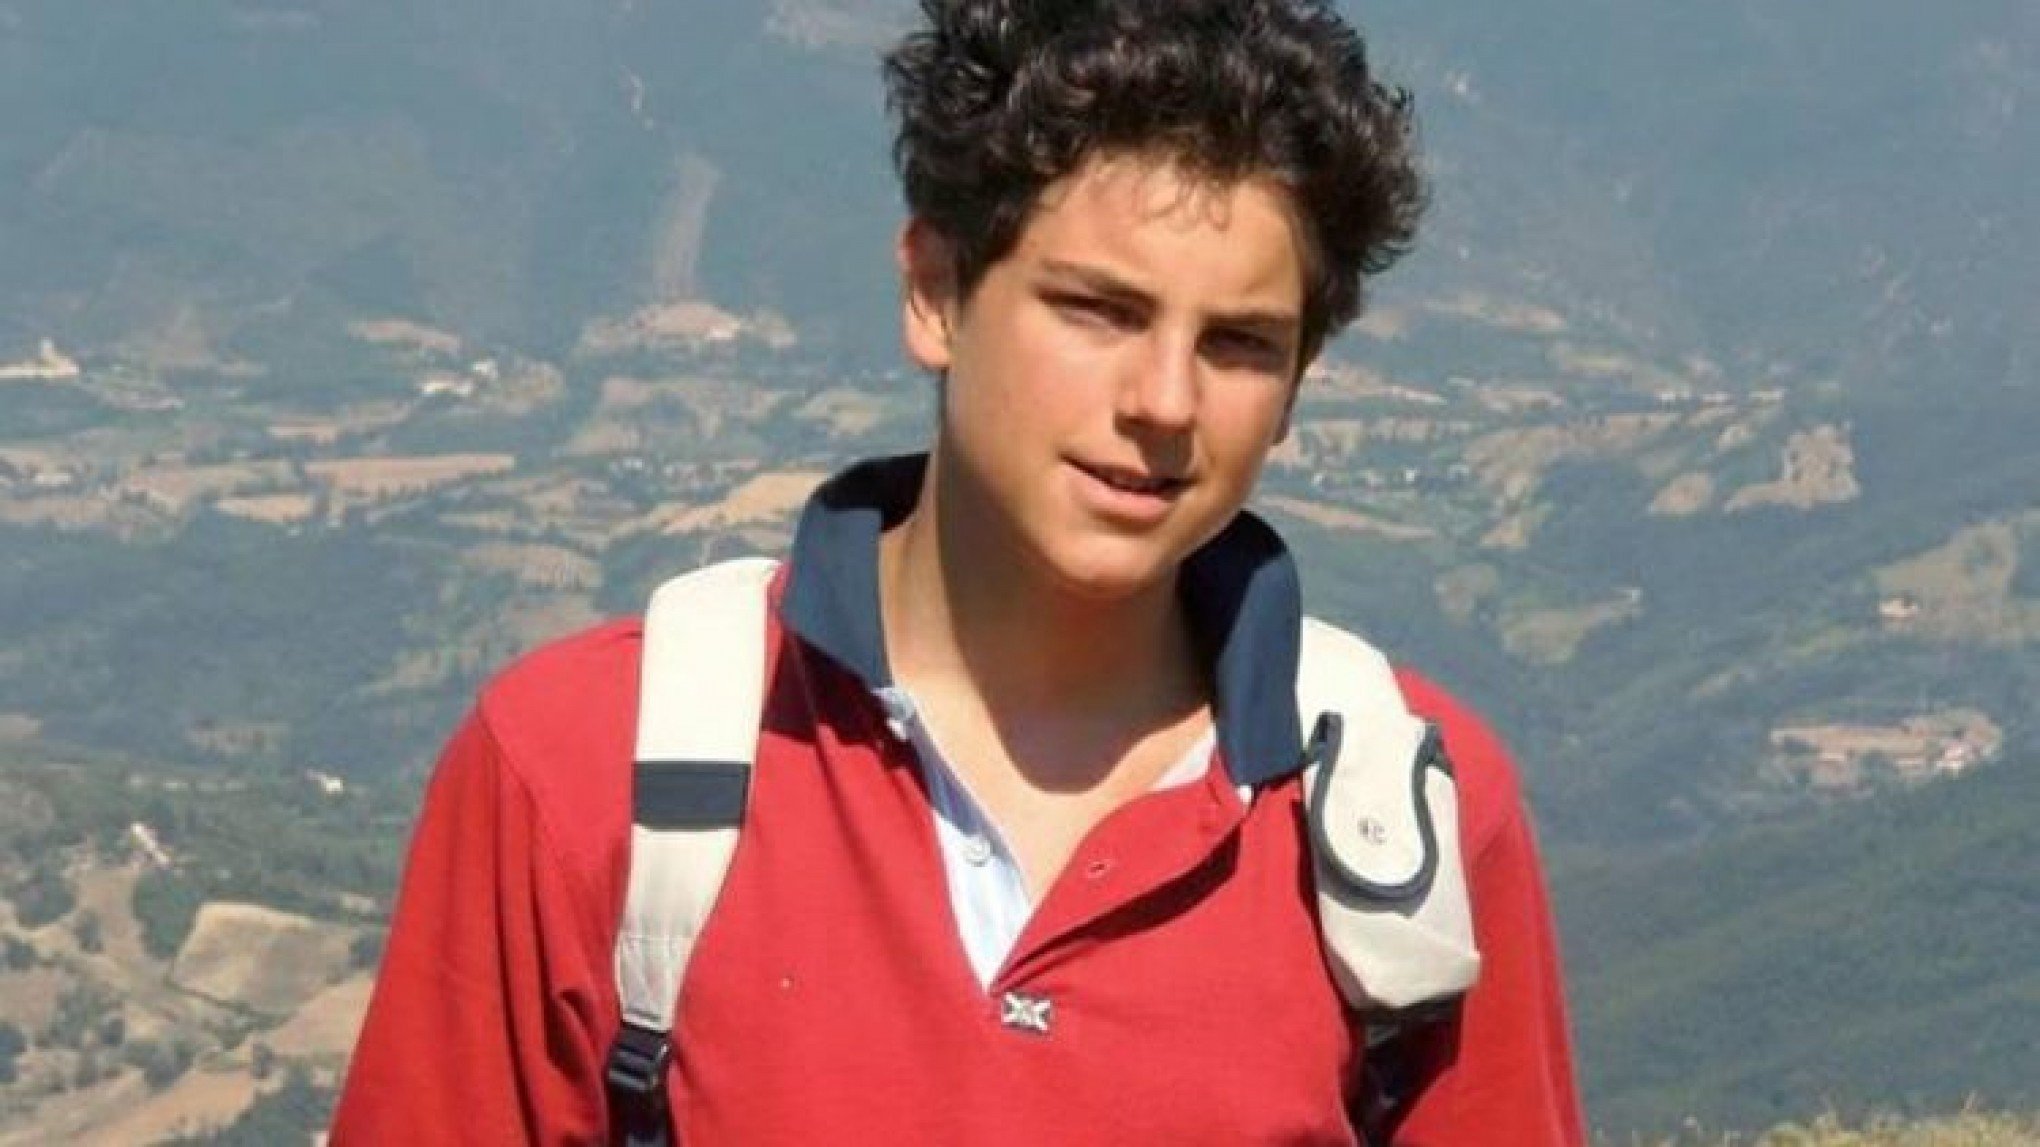 CARLO ACUTIS: Conheça a história do menino de 15 anos conhecido como "padroeiro da internet" e seus milagres